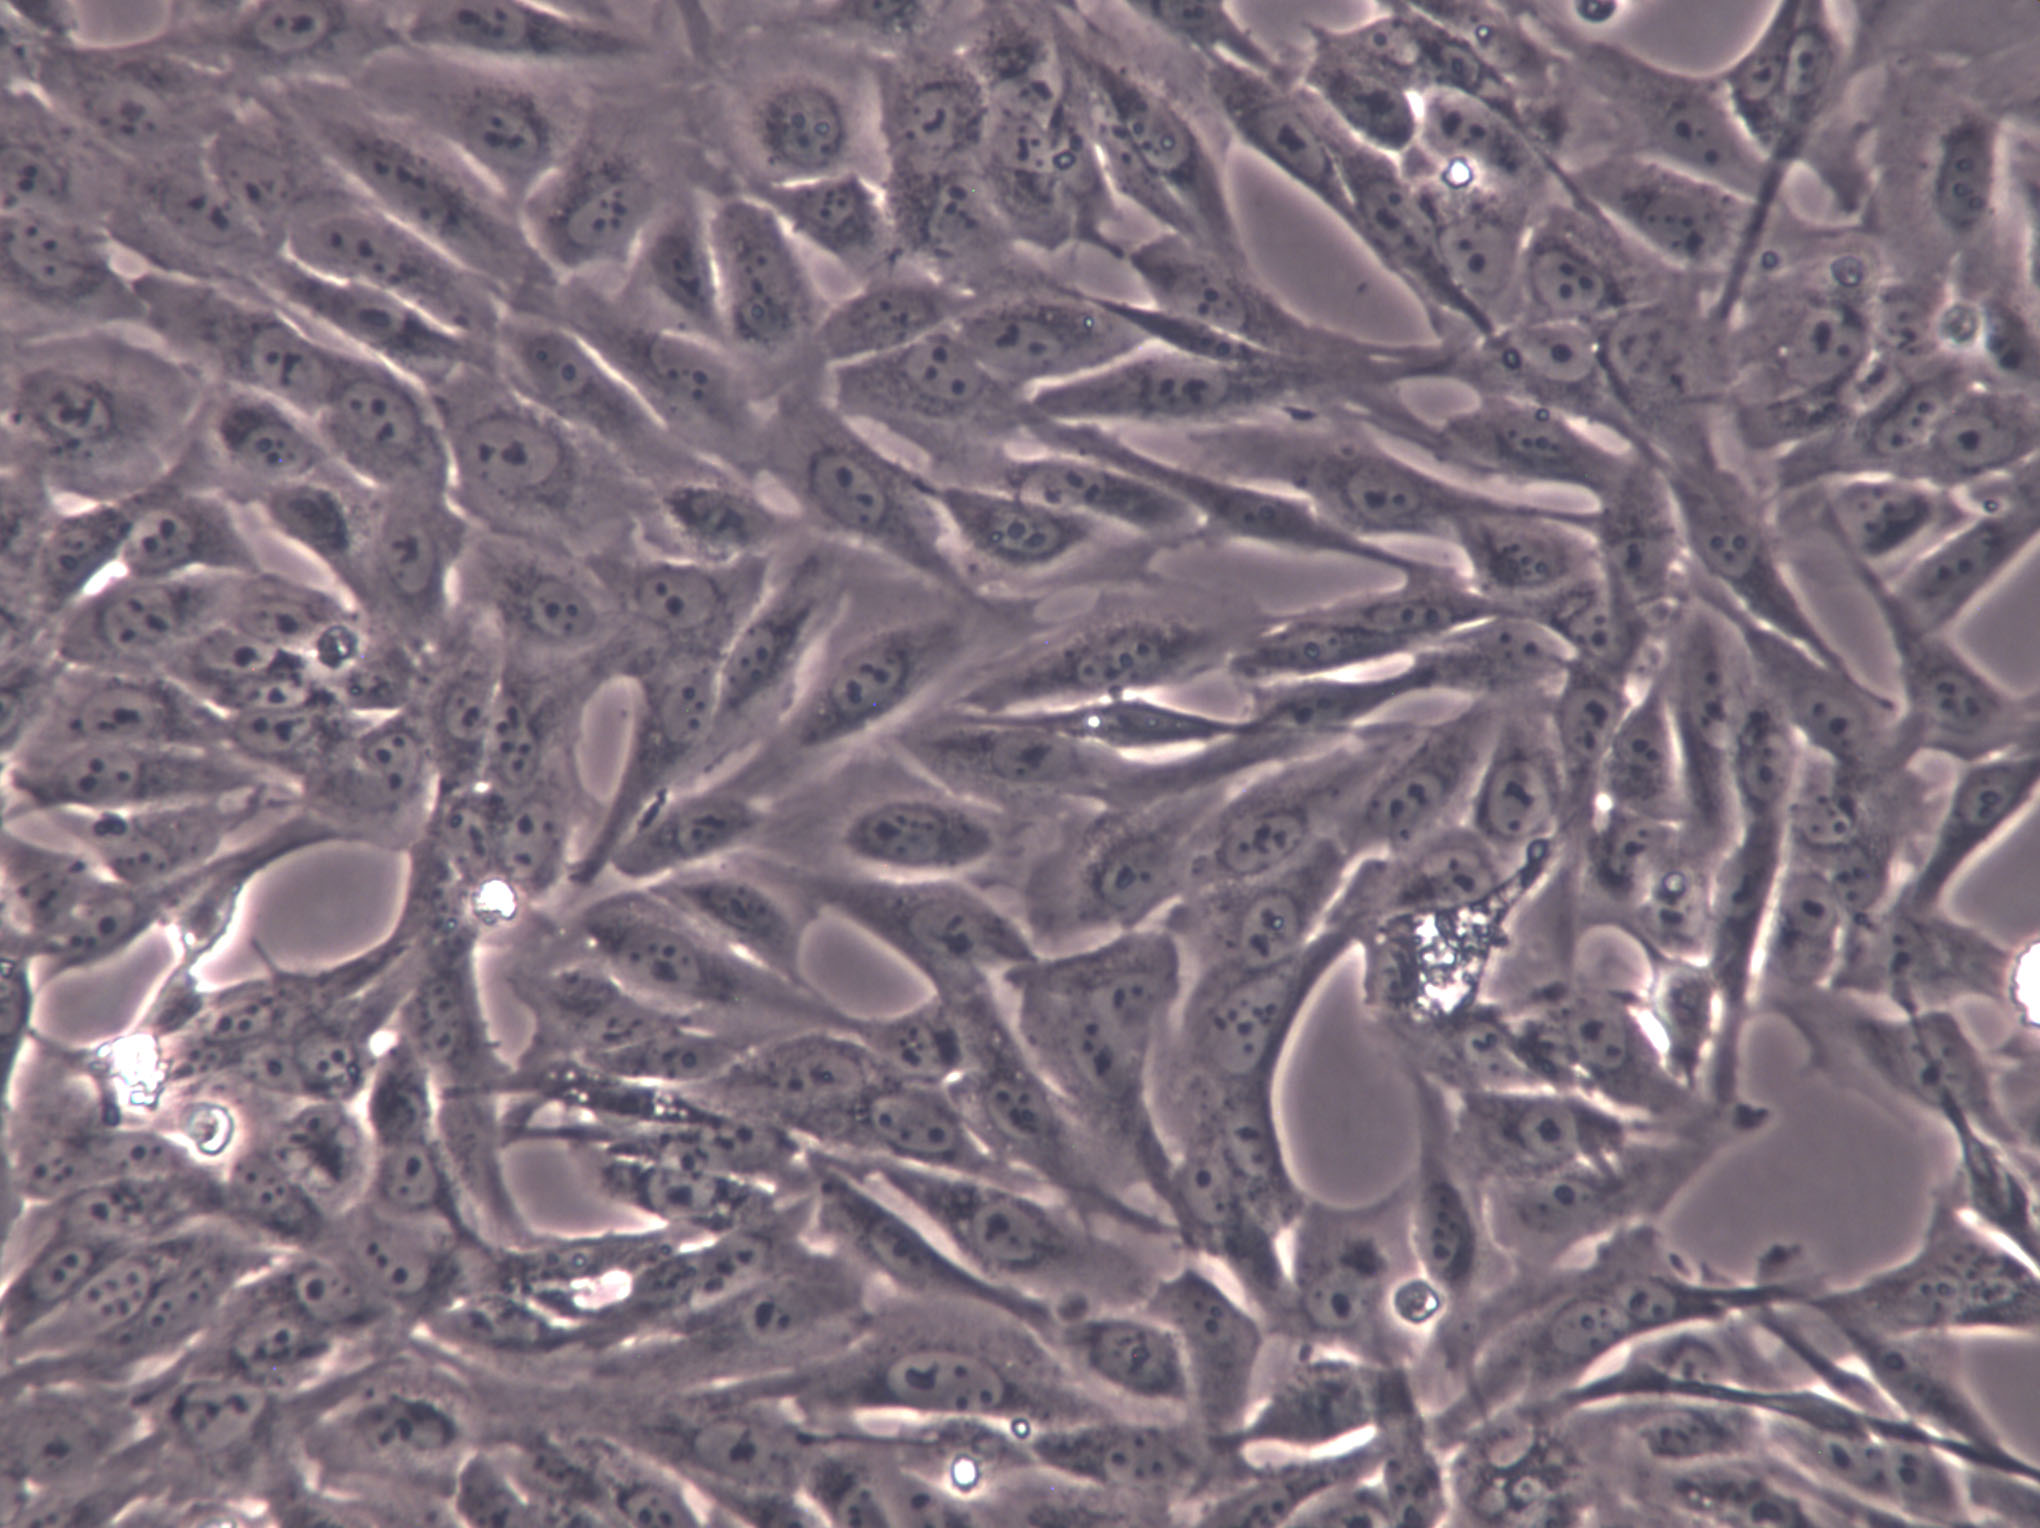 RPMI-2650 Cells|人鼻腔上皮克隆细胞,RPMI-2650 Cells